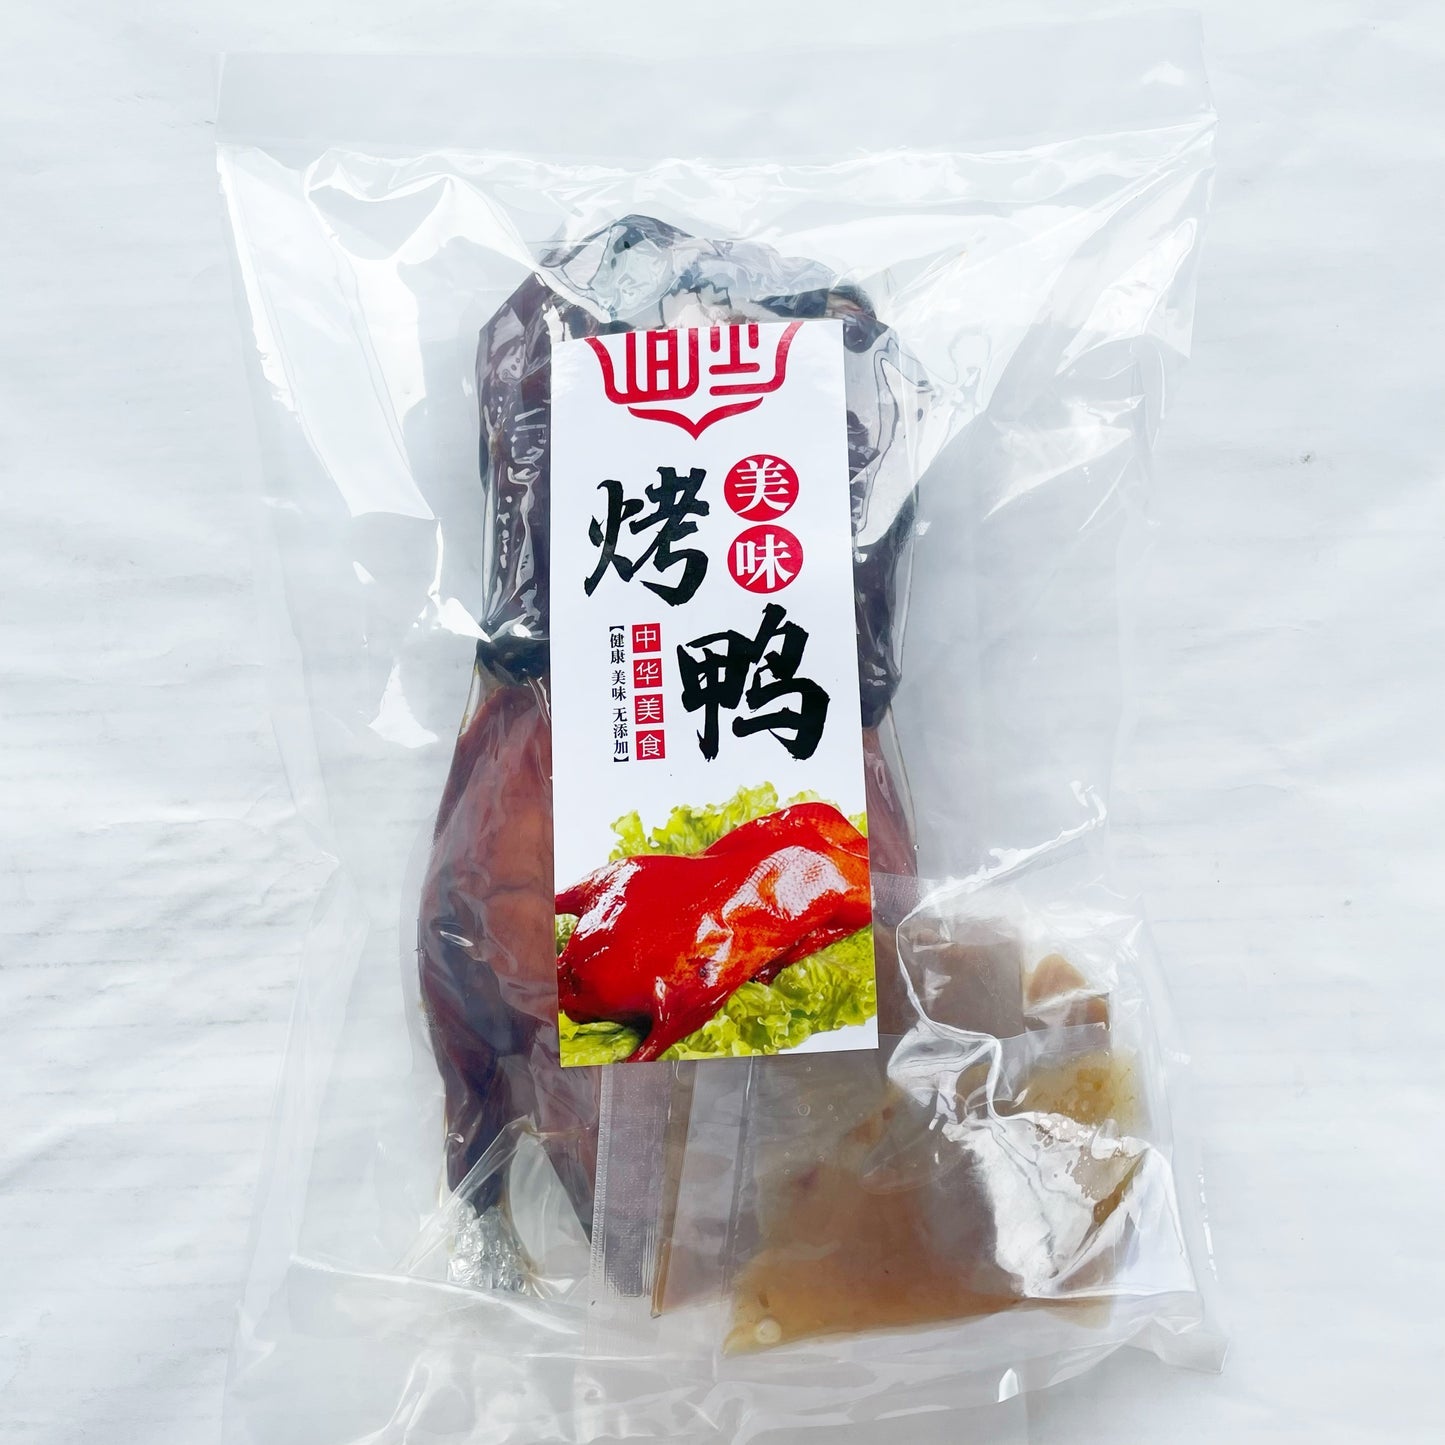 现考 広式焼鴨 烤鸭  冷蔵发货口感最佳 日本国内加工